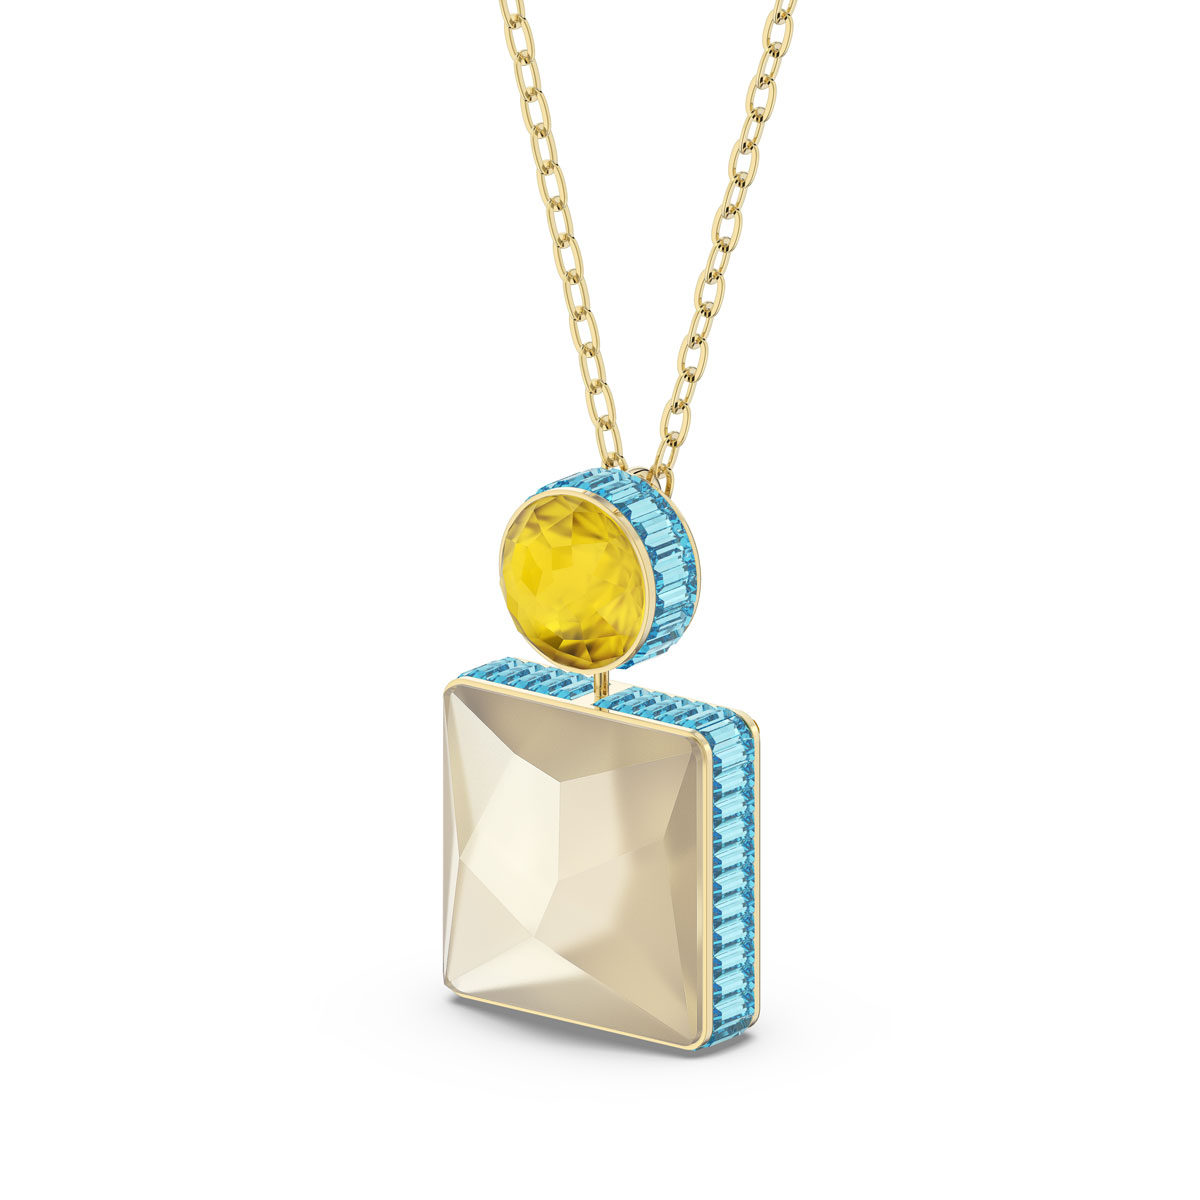 Swarovski Orbita Necklace, Square Cut Crystal, Multicolored, Gold-Tone Plated